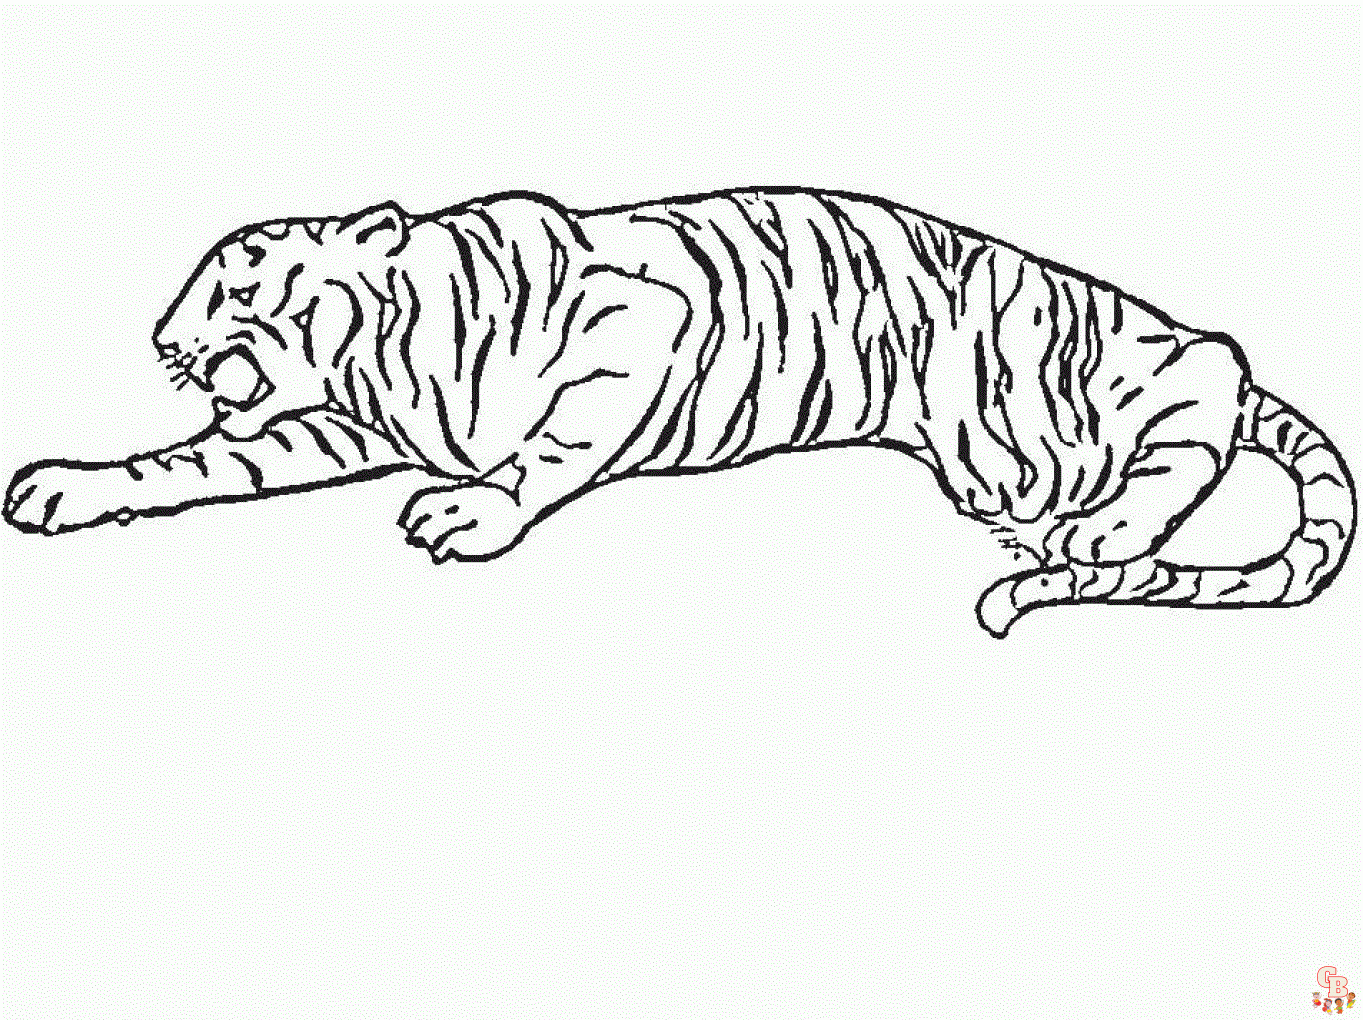 Tiger bruellt zum ausdrucken